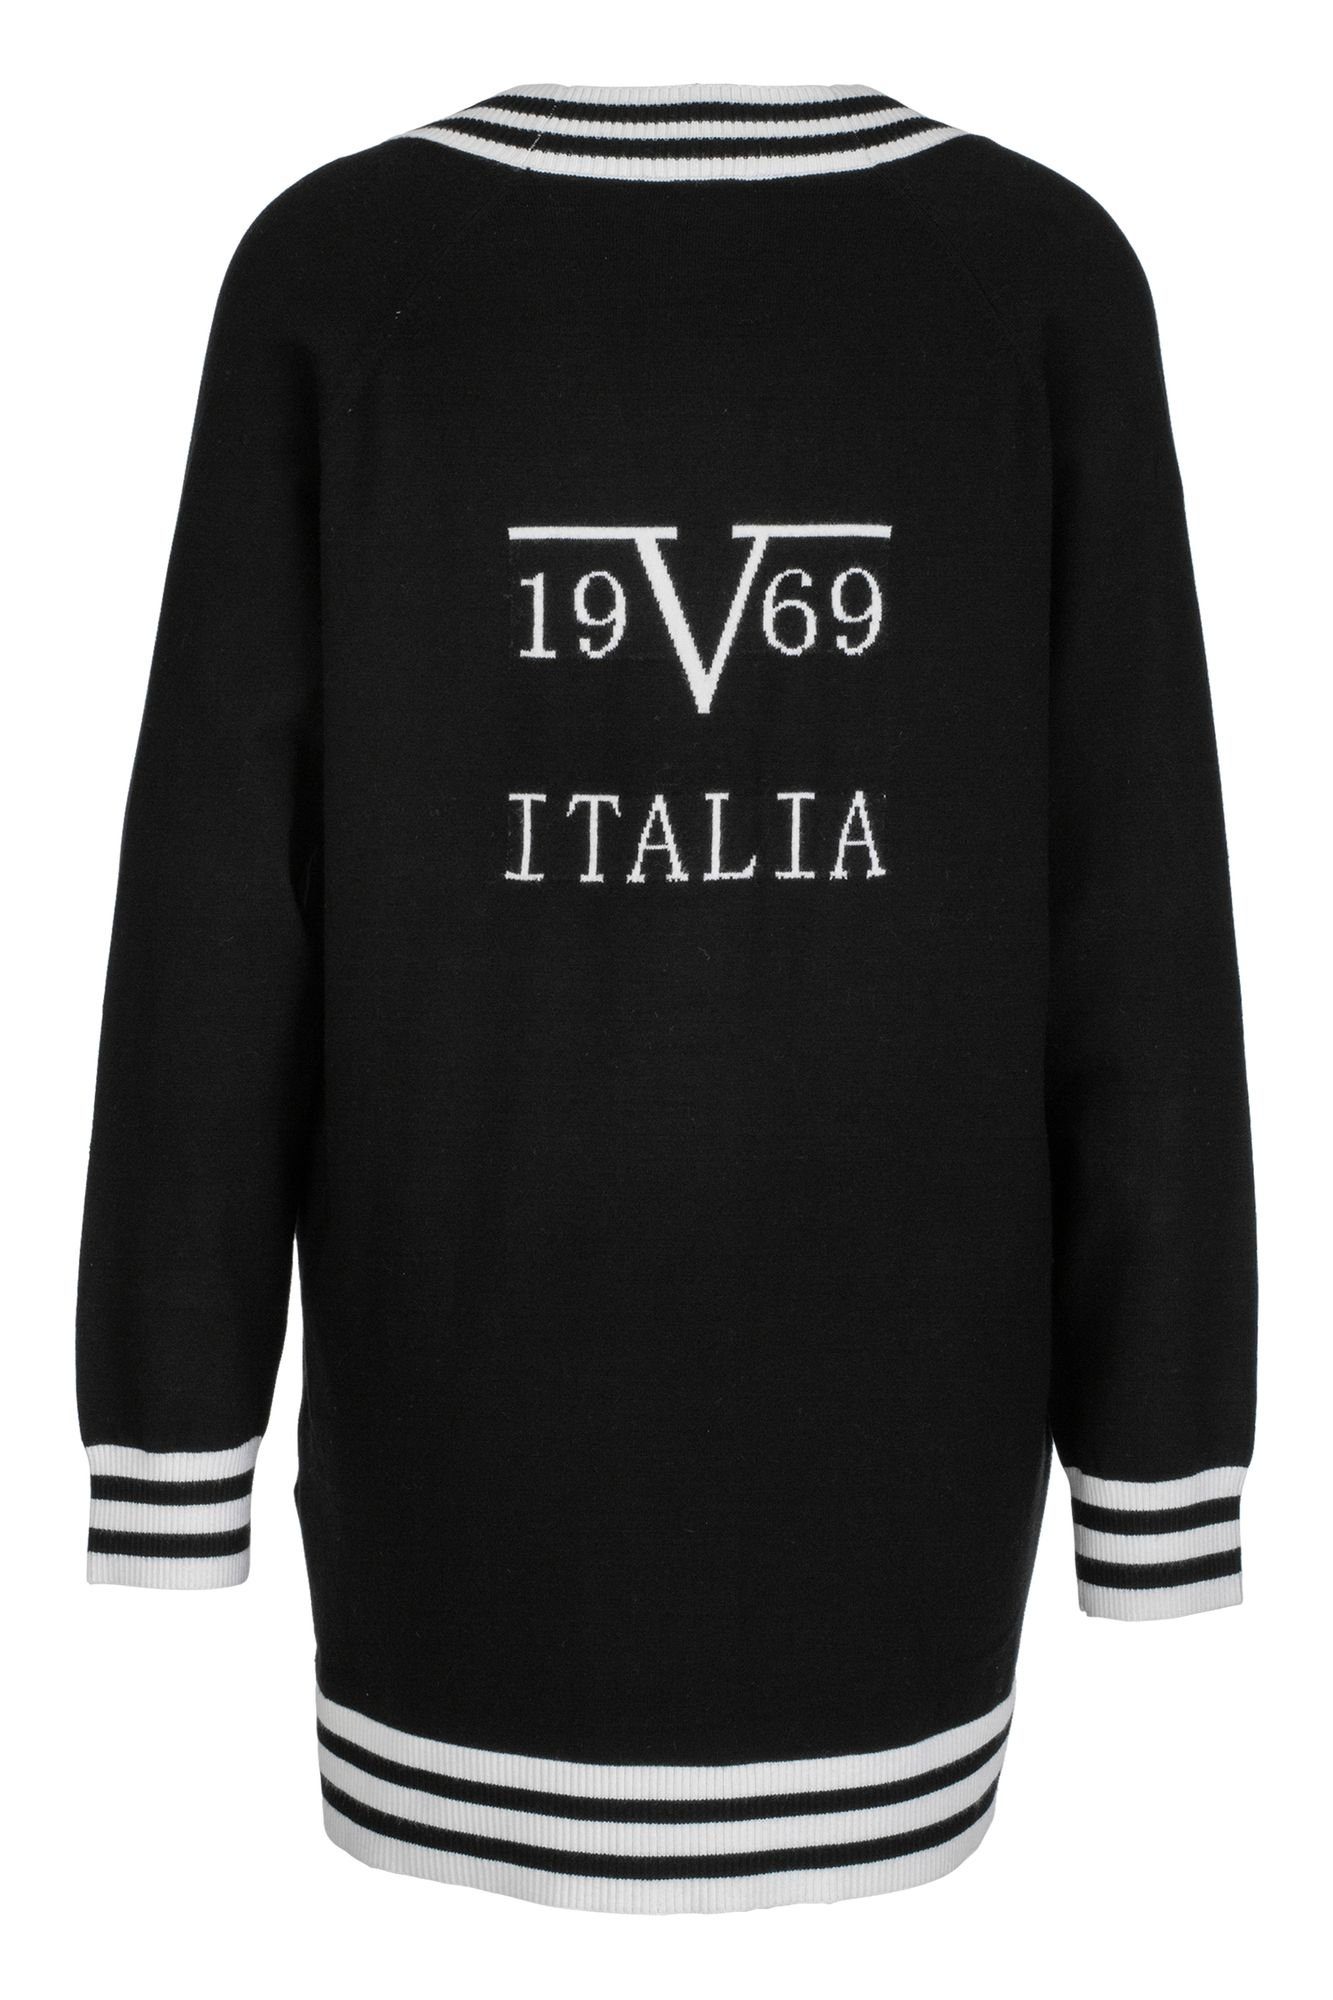 by Strickjacke 19V69 EJ7230 Versace Italia